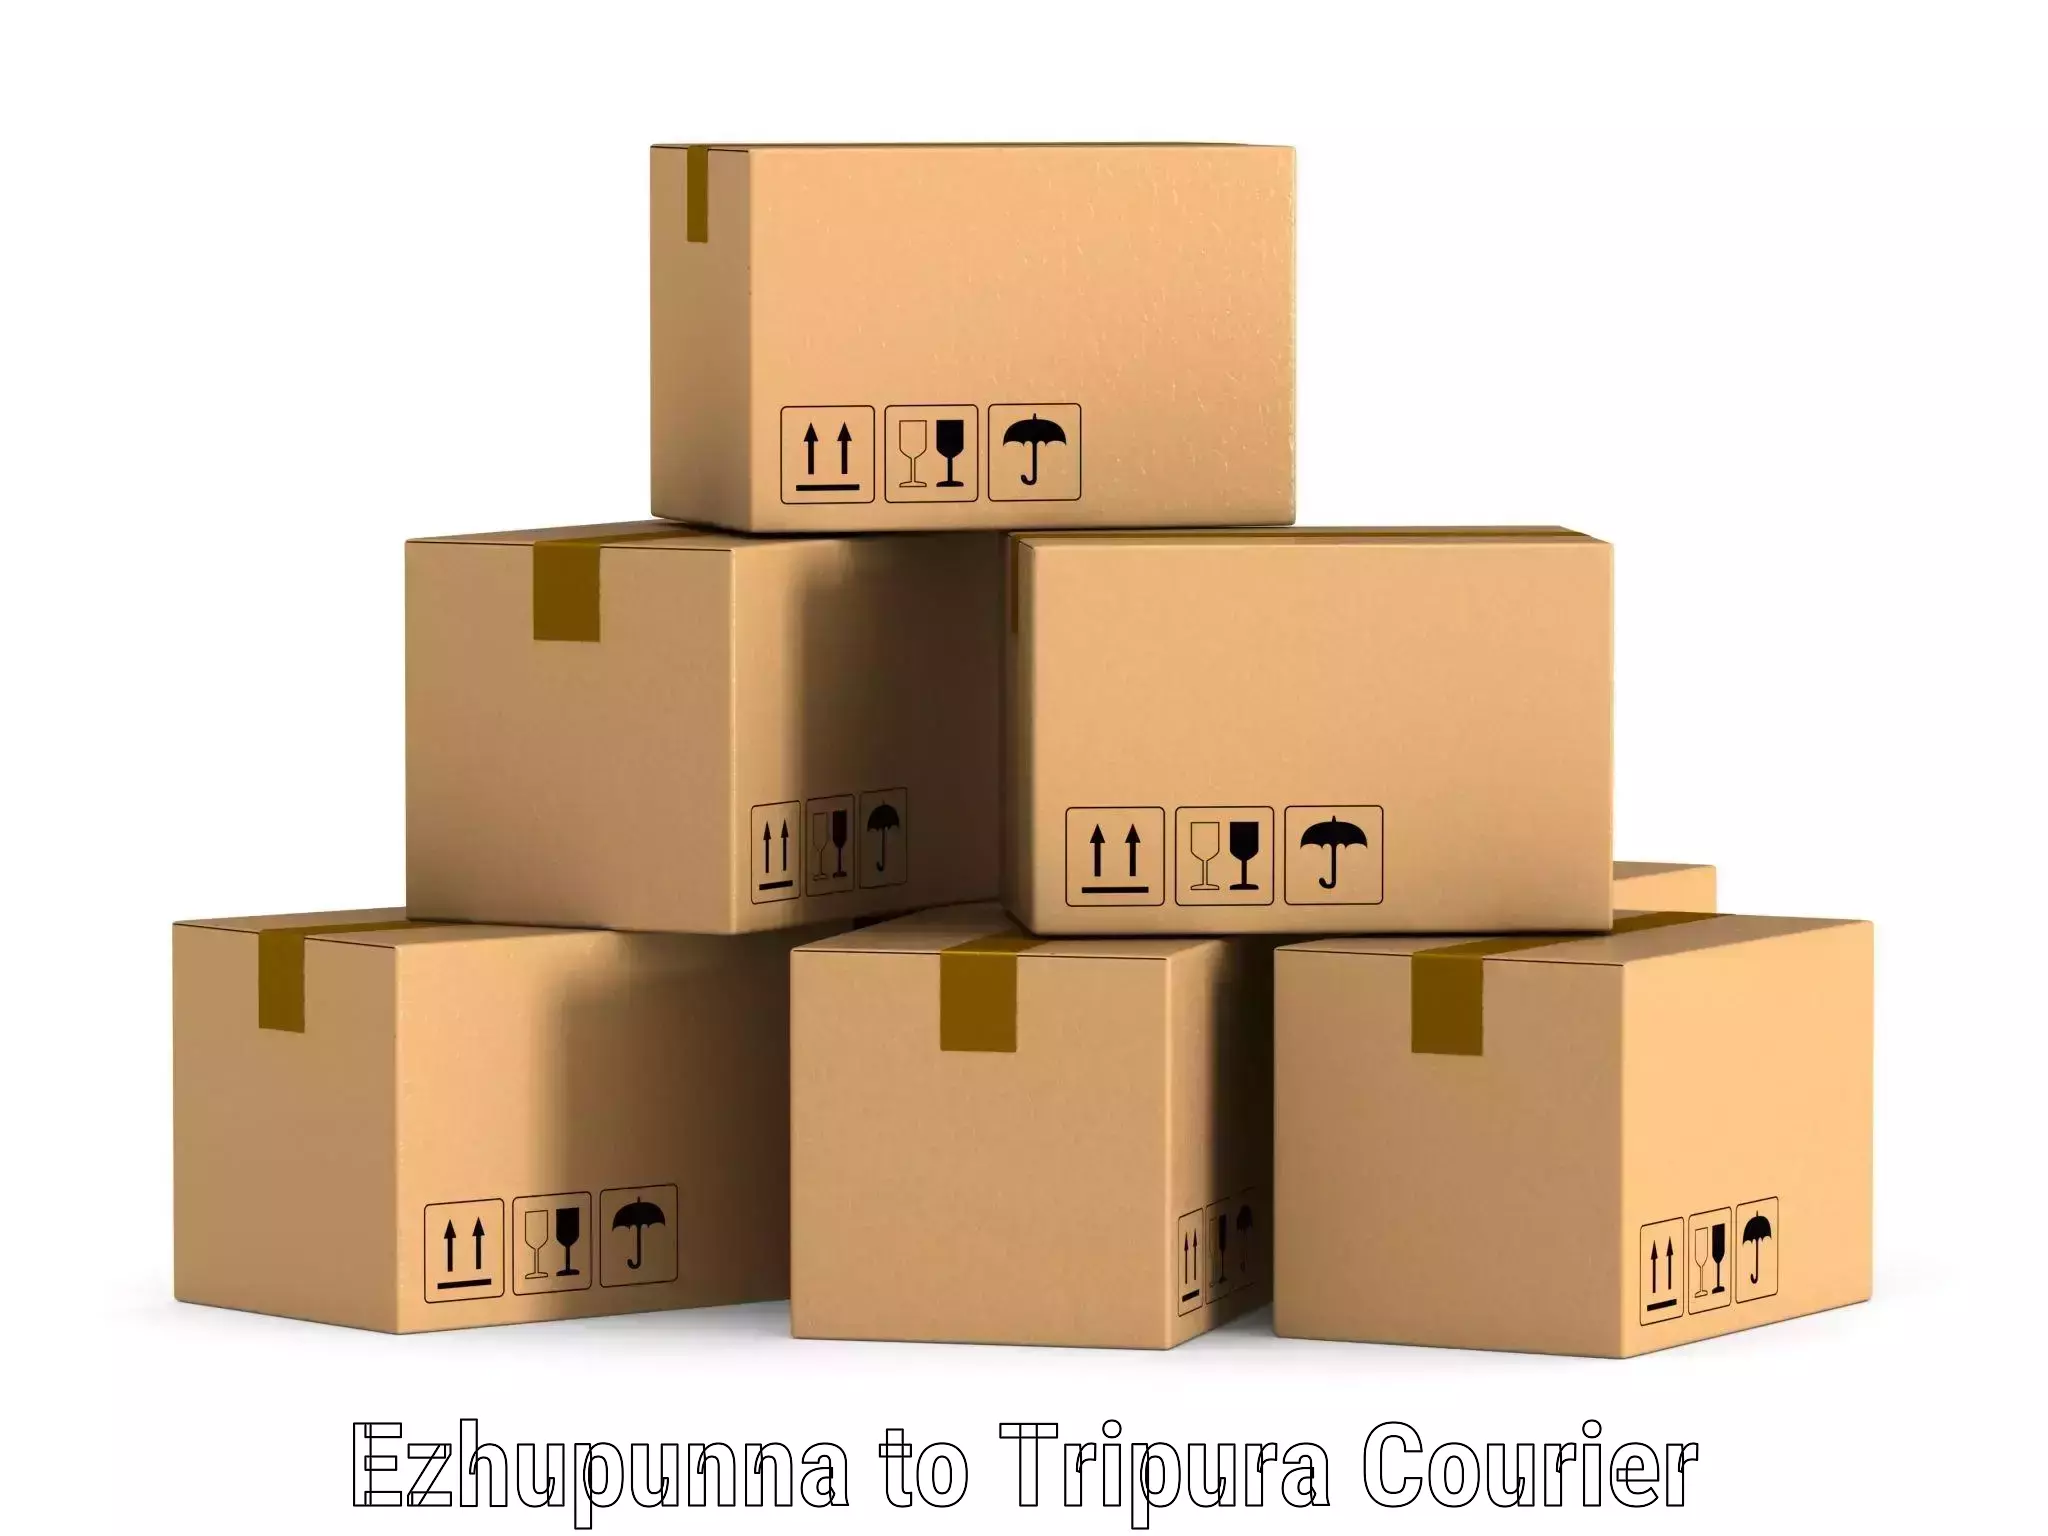 Logistics service provider Ezhupunna to Udaipur Tripura